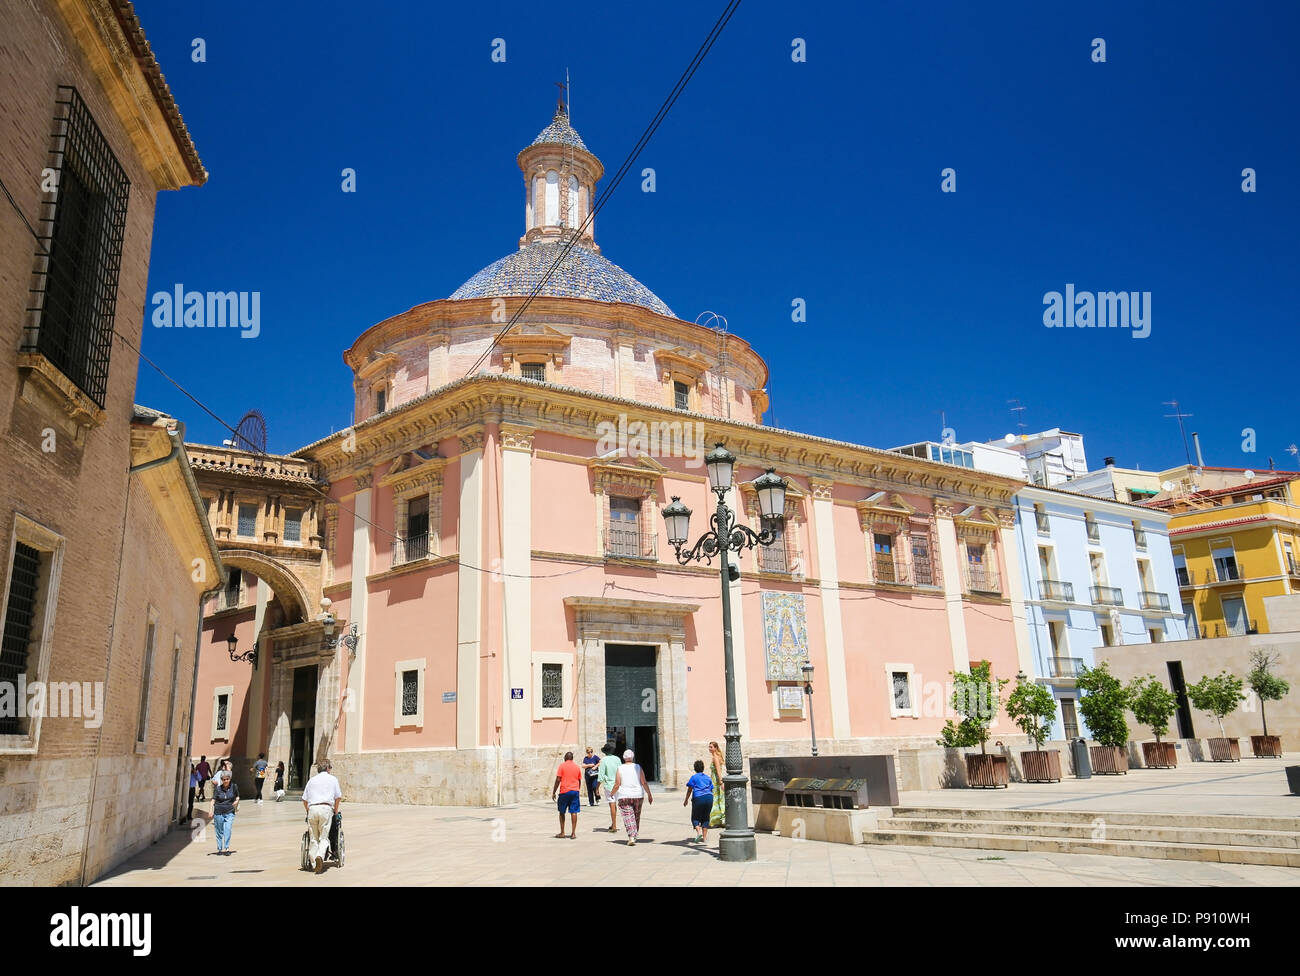 La basilique de la Virgen de los Desamparados dans le centre de Valence, Espagne Banque D'Images